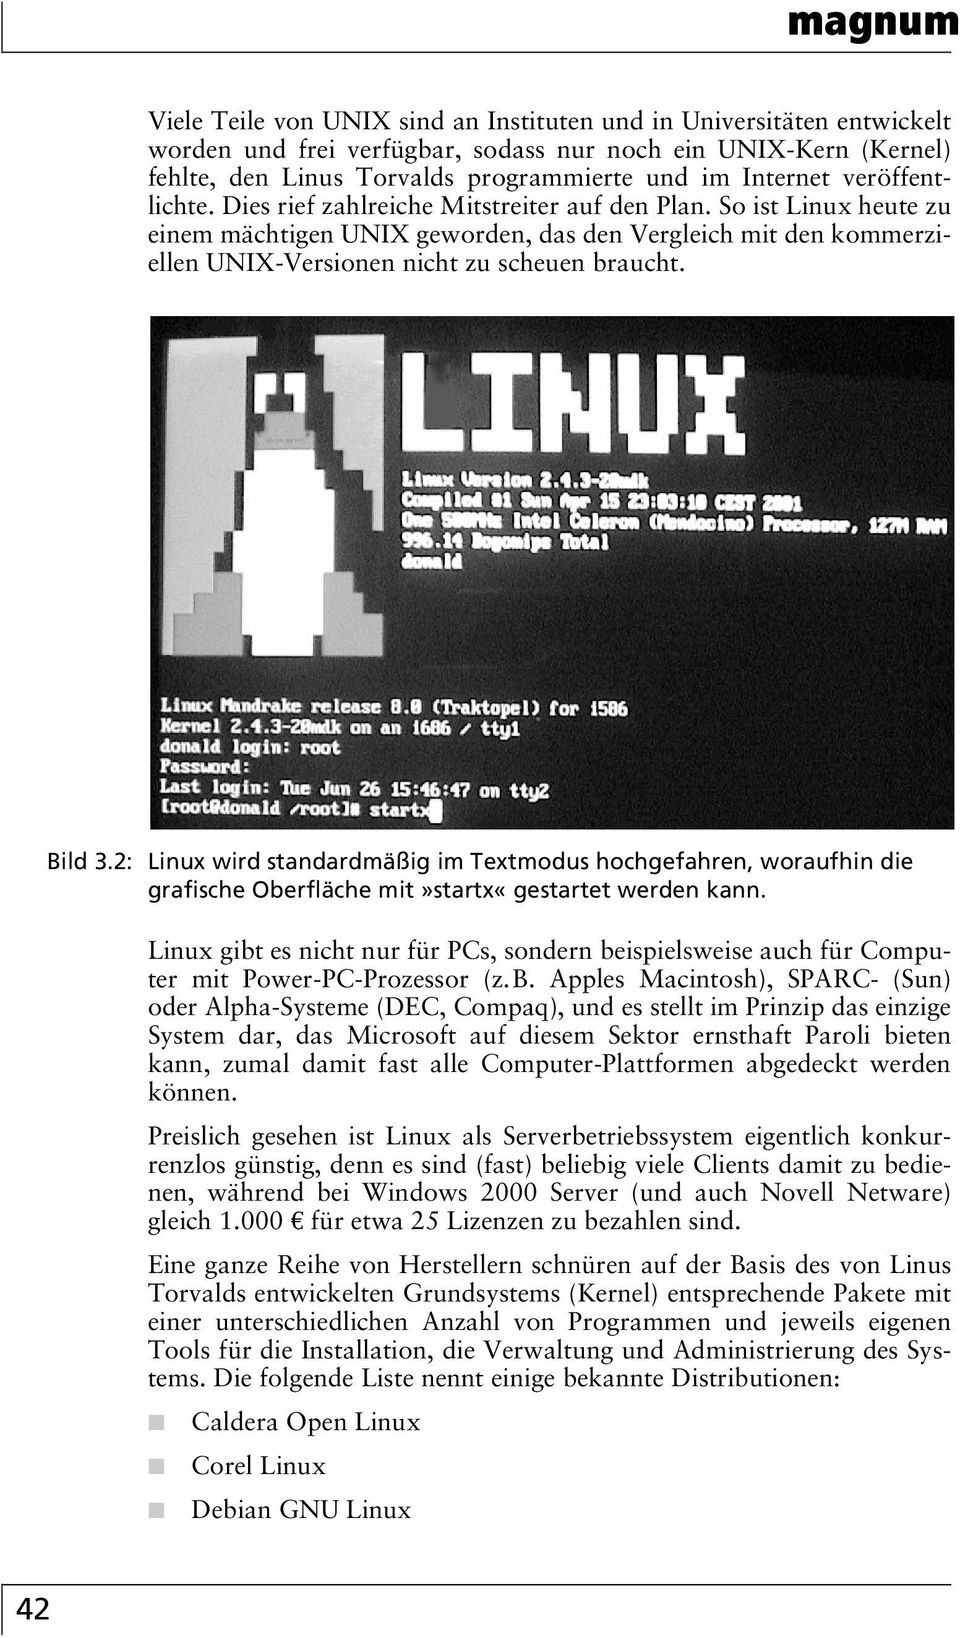 So ist Linux heute zu einem mächtigen UNIX geworden, das den Vergleich mit den kommerziellen UNIX-Versionen nicht zu scheuen braucht. Bild 3.